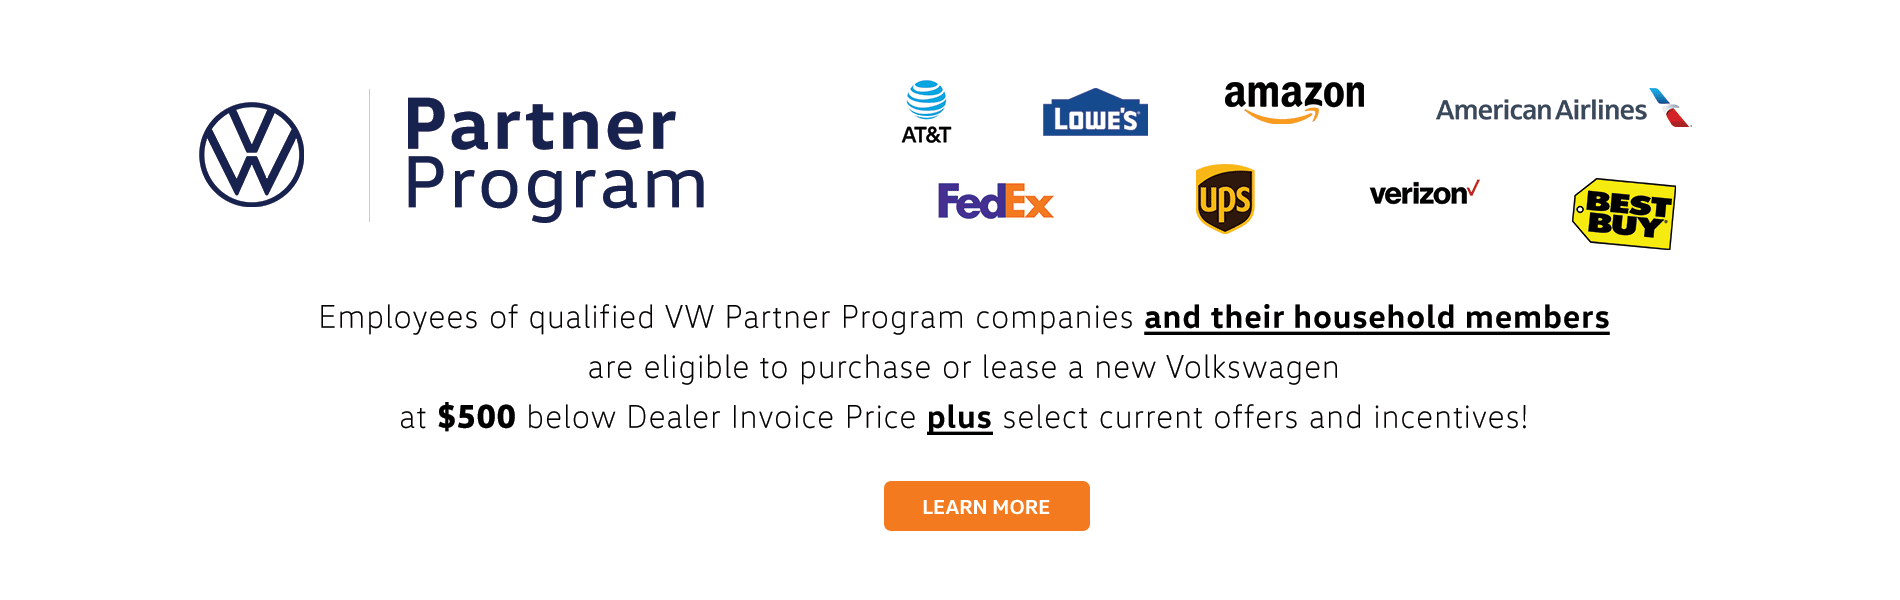 Volkswagen Partner Program